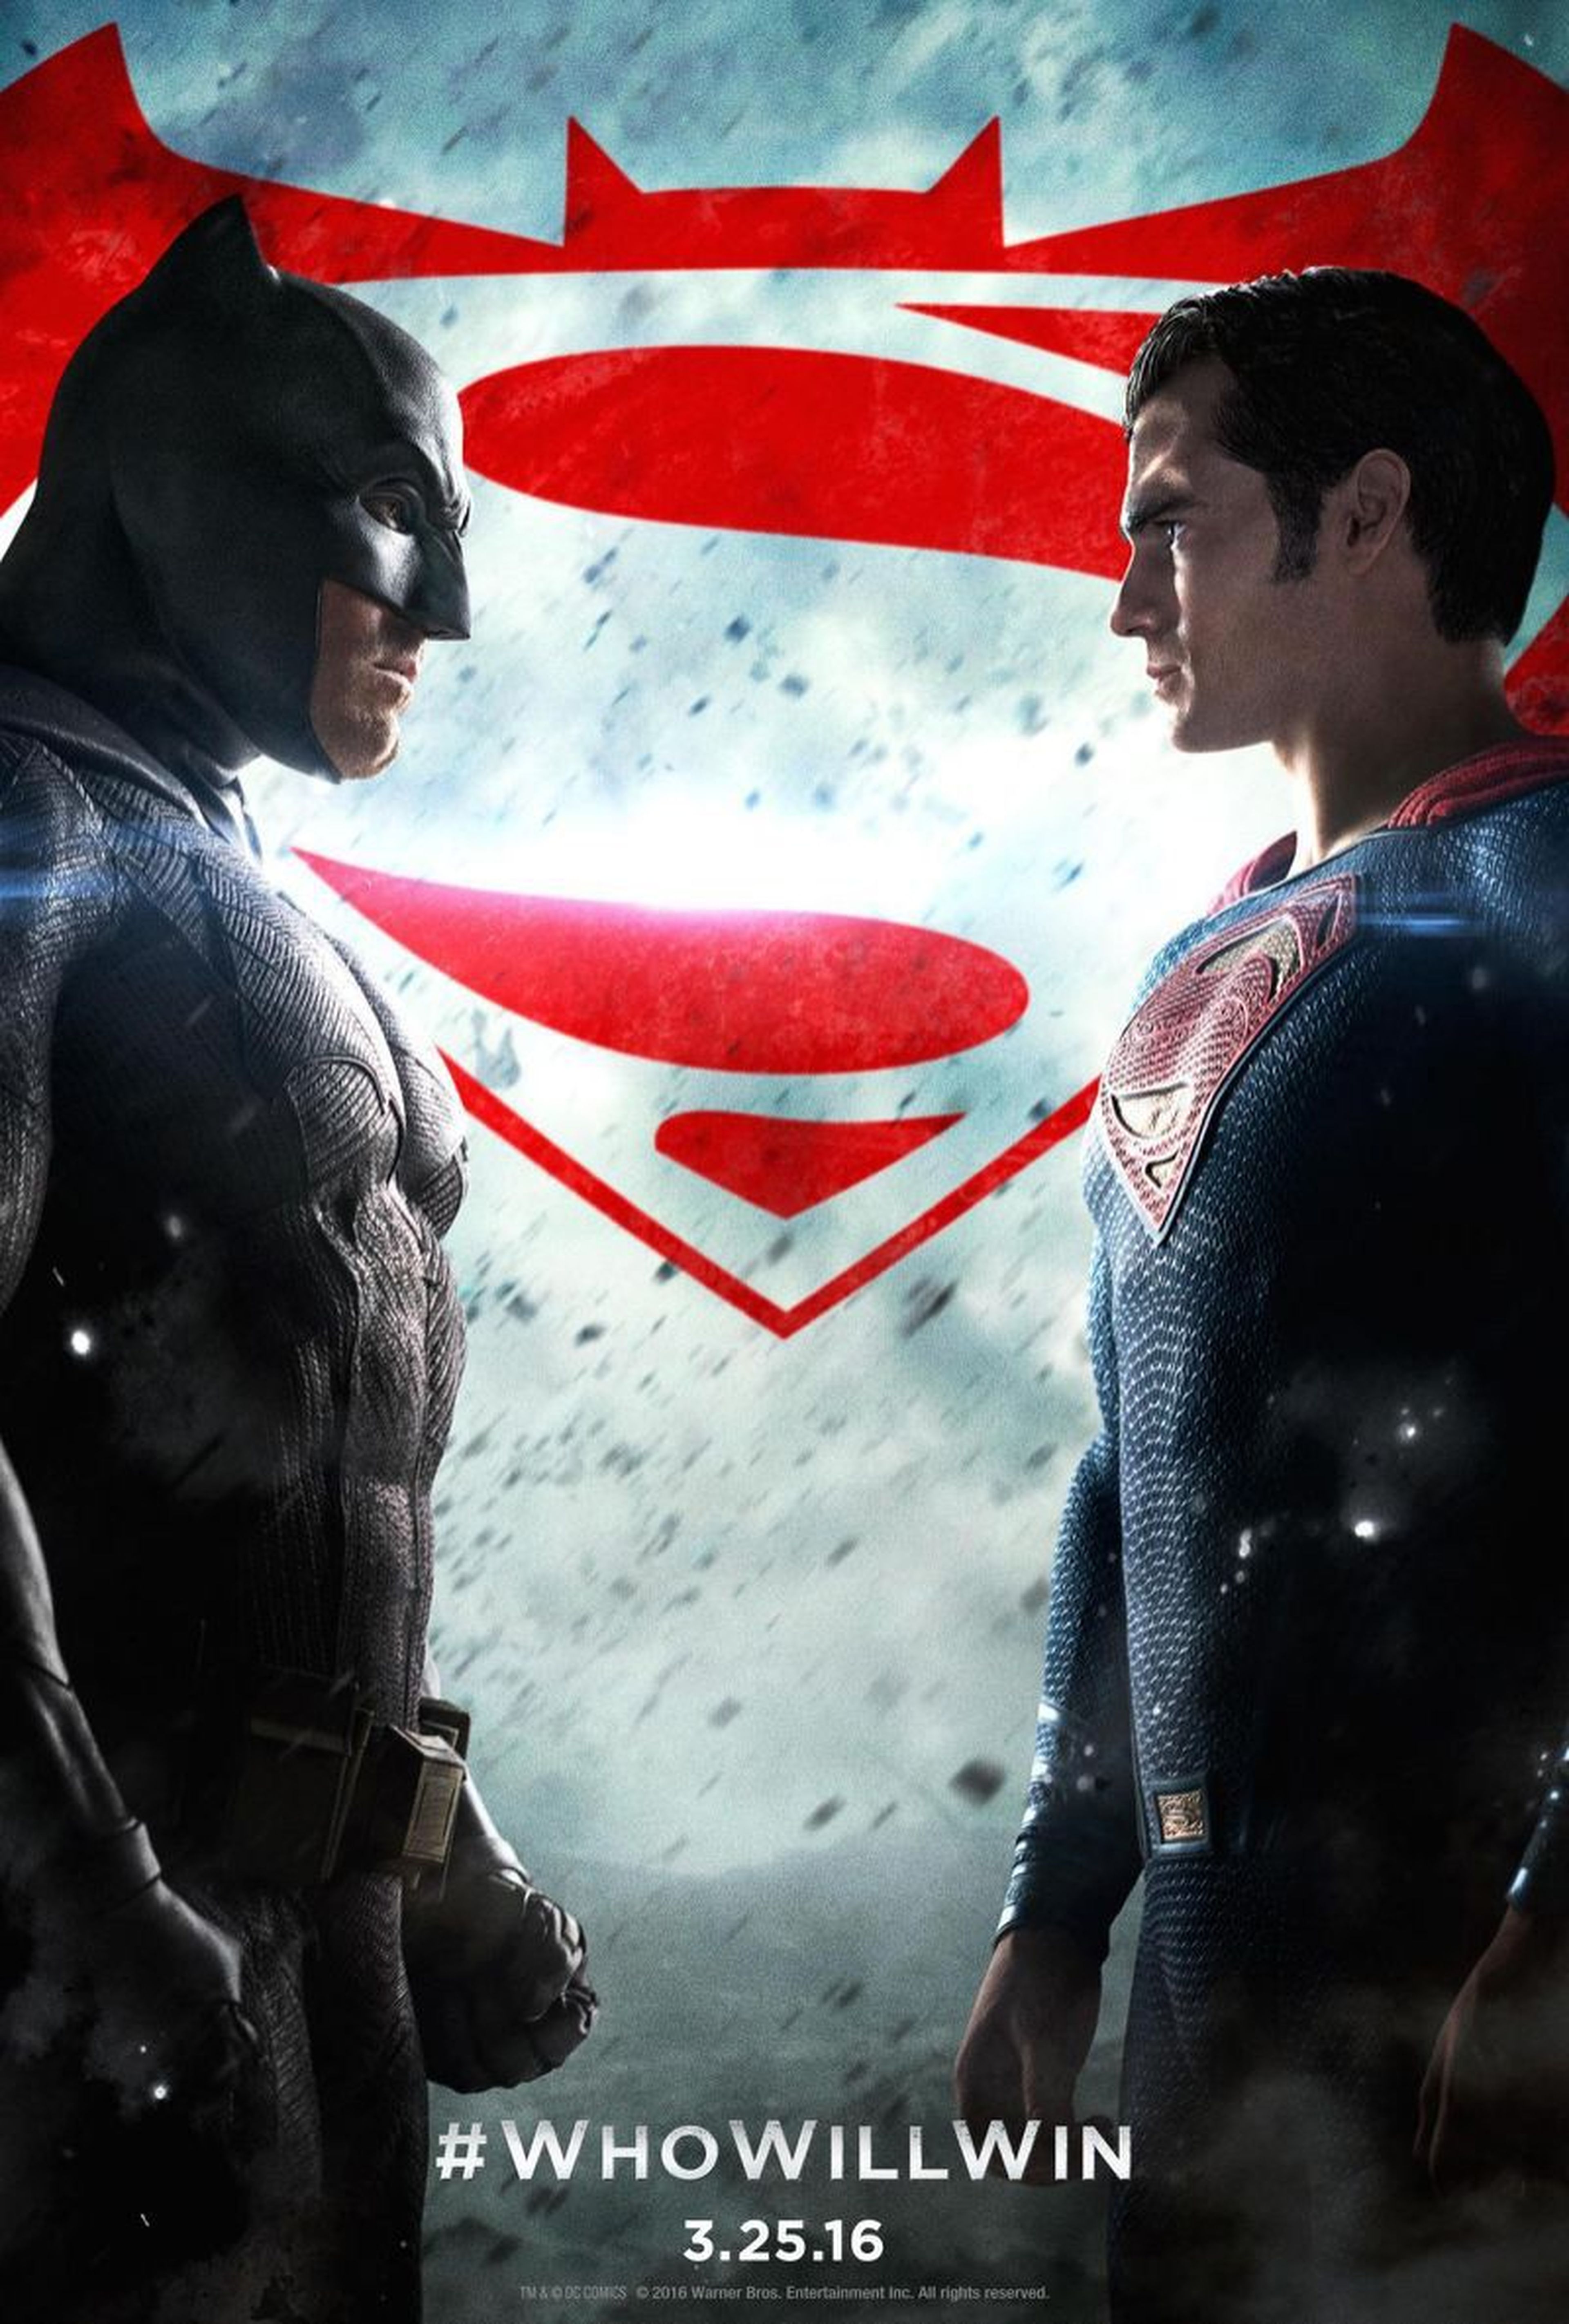 Batman v Superman - Nuevo spot y cartel con los superhéroes enfrentados